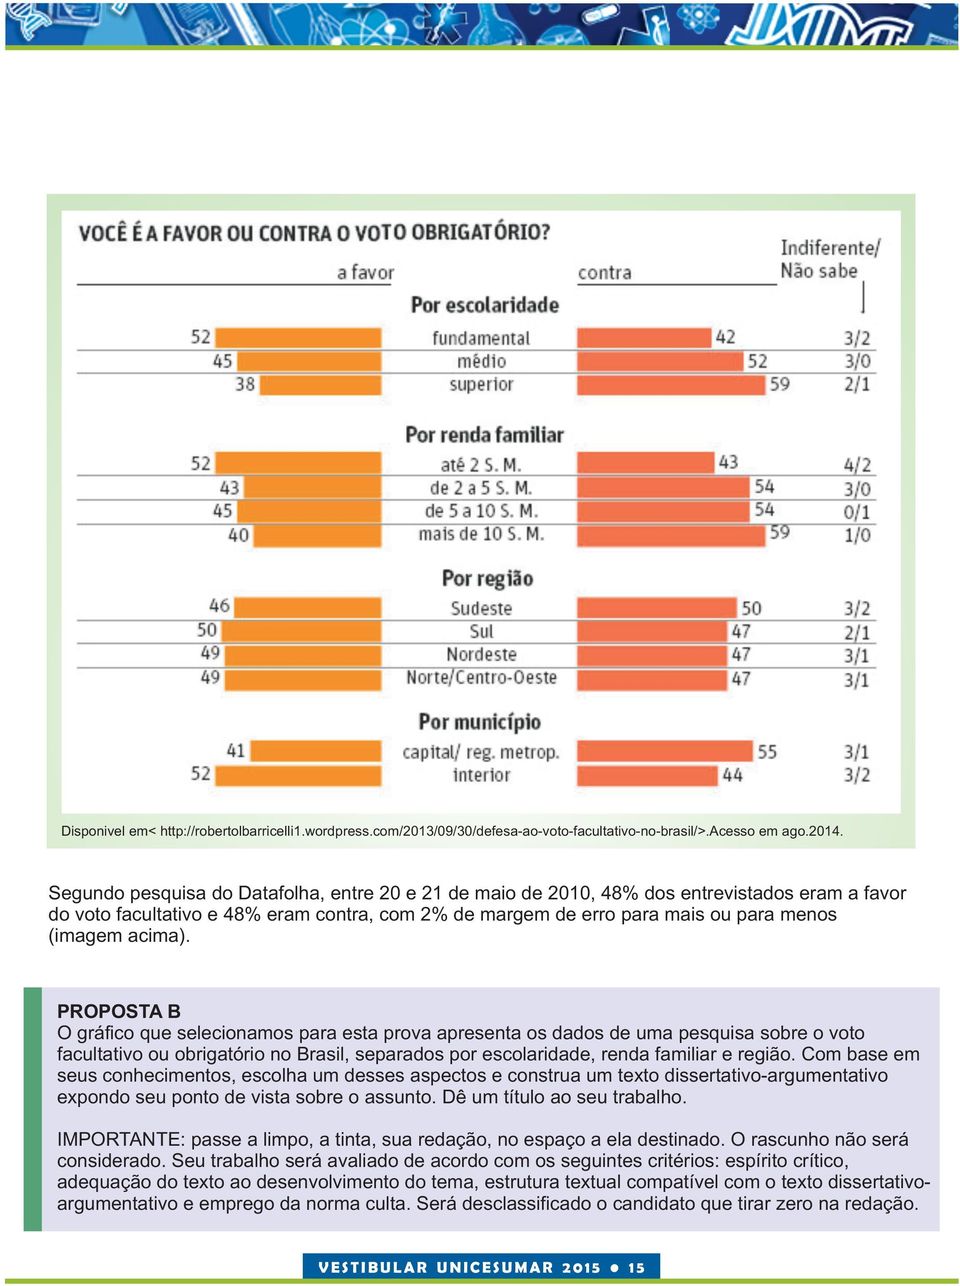 PROPOSTA B O gráfico que selecionamos para esta prova apresenta os dados de uma pesquisa sobre o voto facultativo ou obrigatório no Brasil, separados por escolaridade, renda familiar e região.